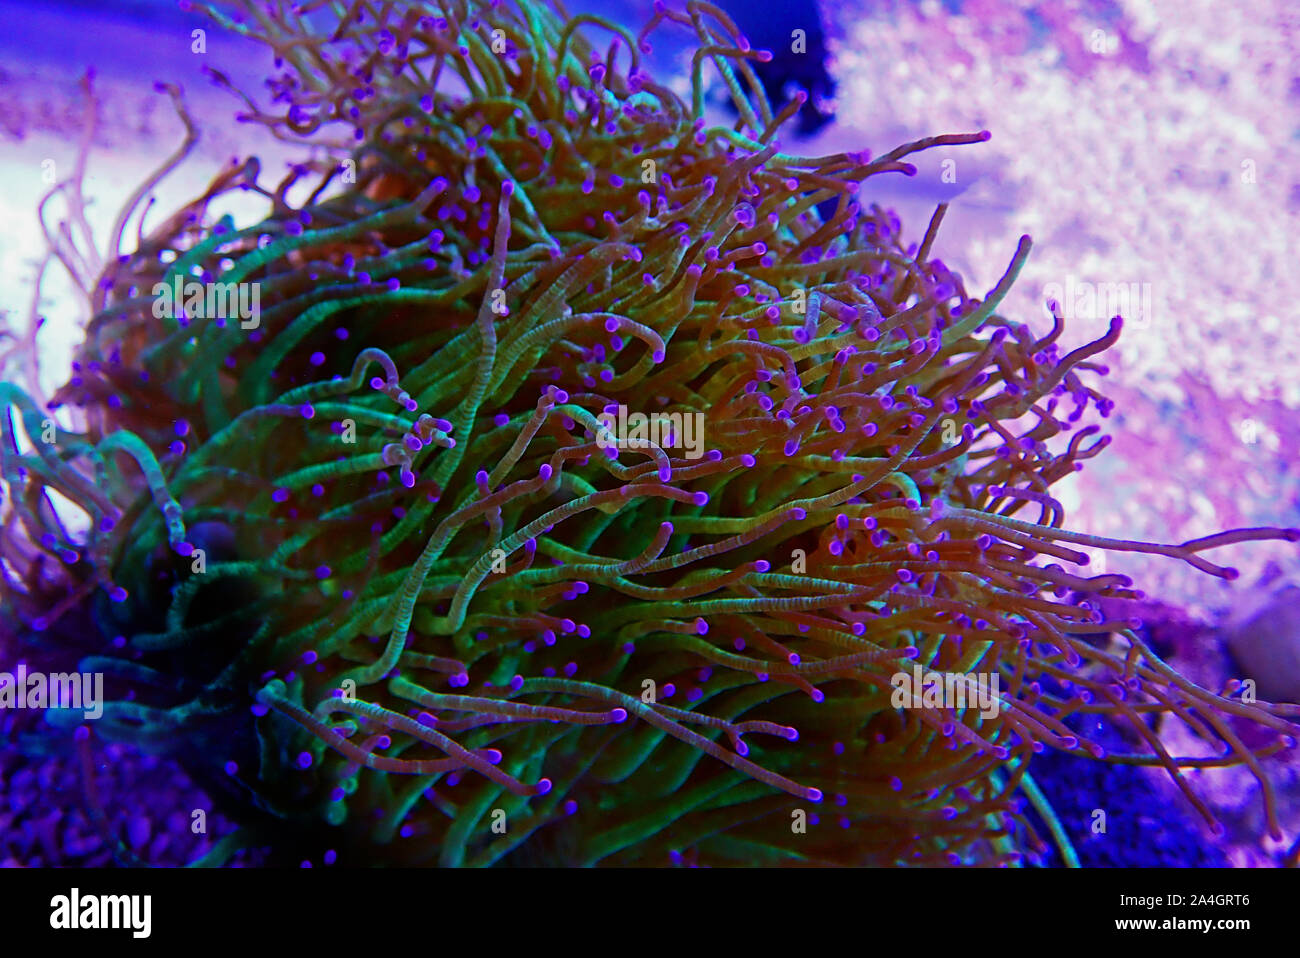 Wonder elegance coral - Catalaphyllia jardinei Stock Photo